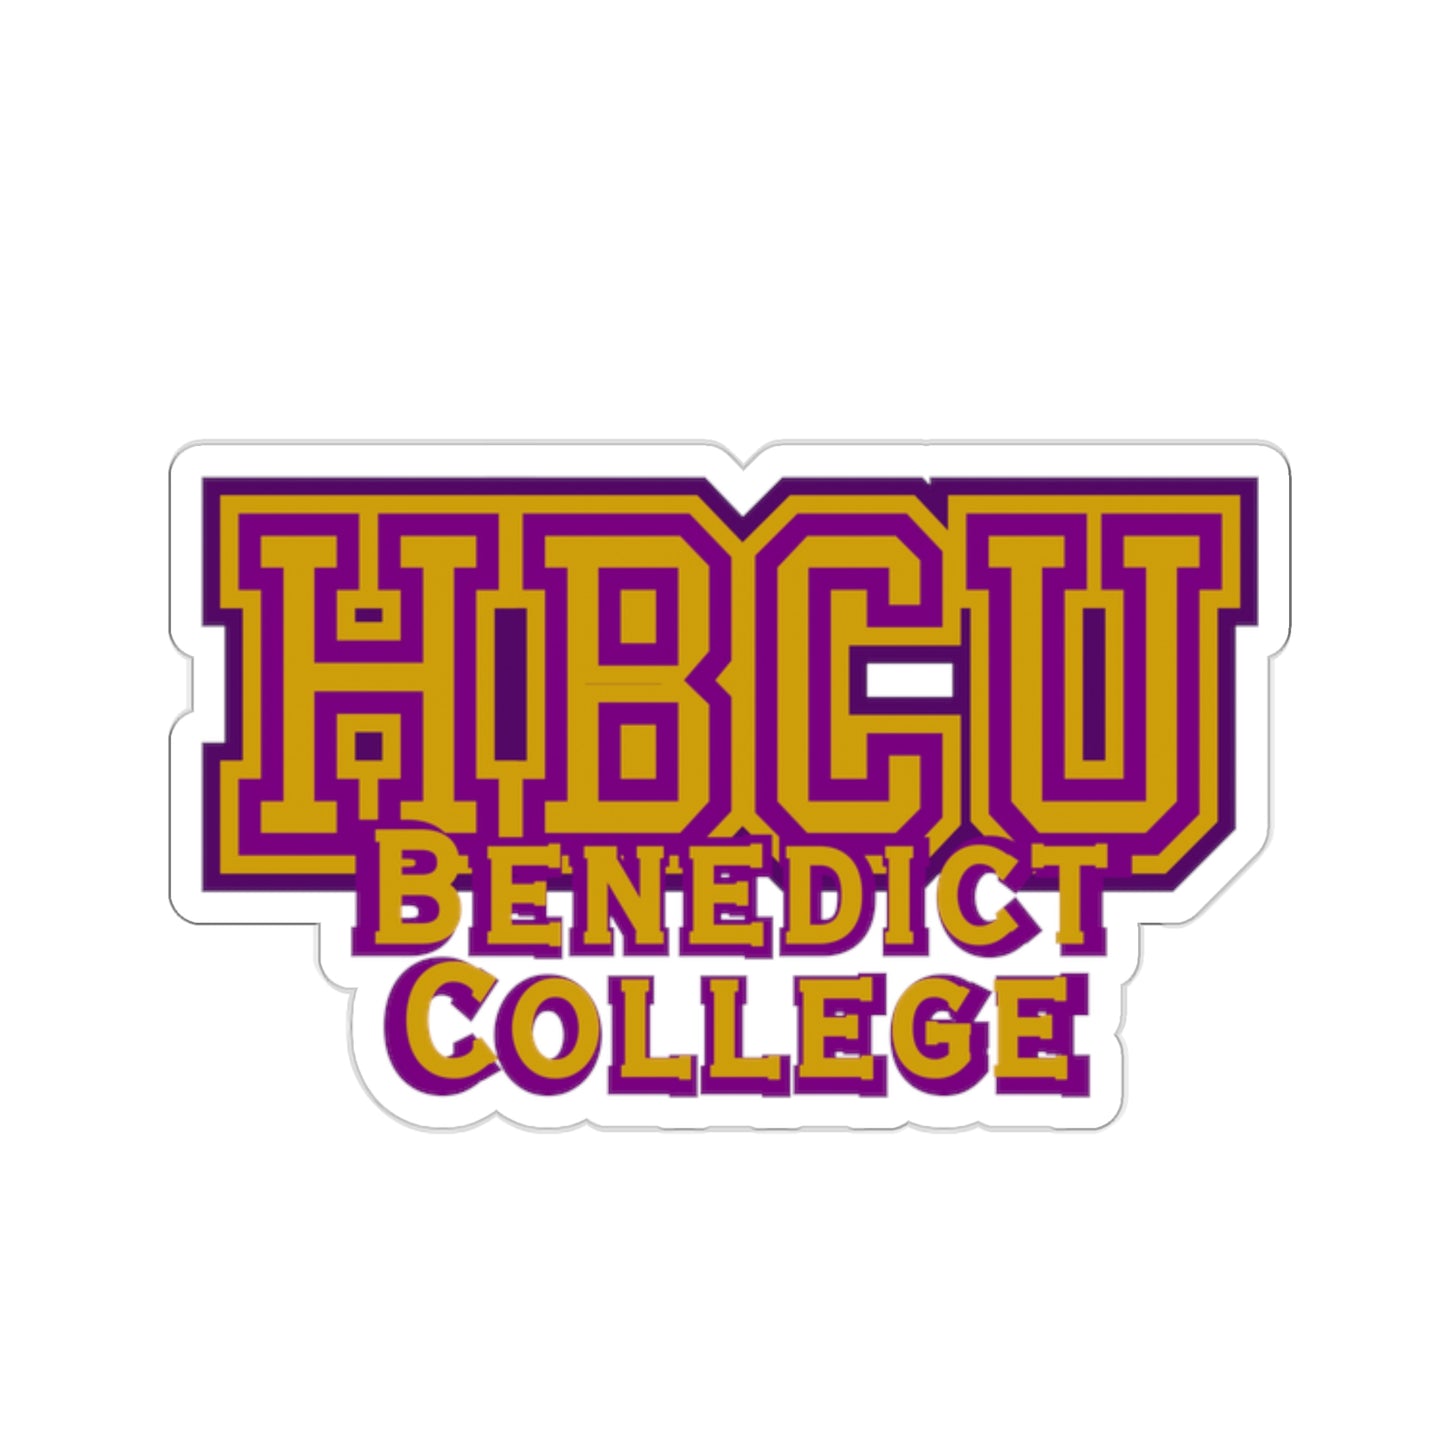 HBCU Benedict College Alumni Kiss-Cut Stickers